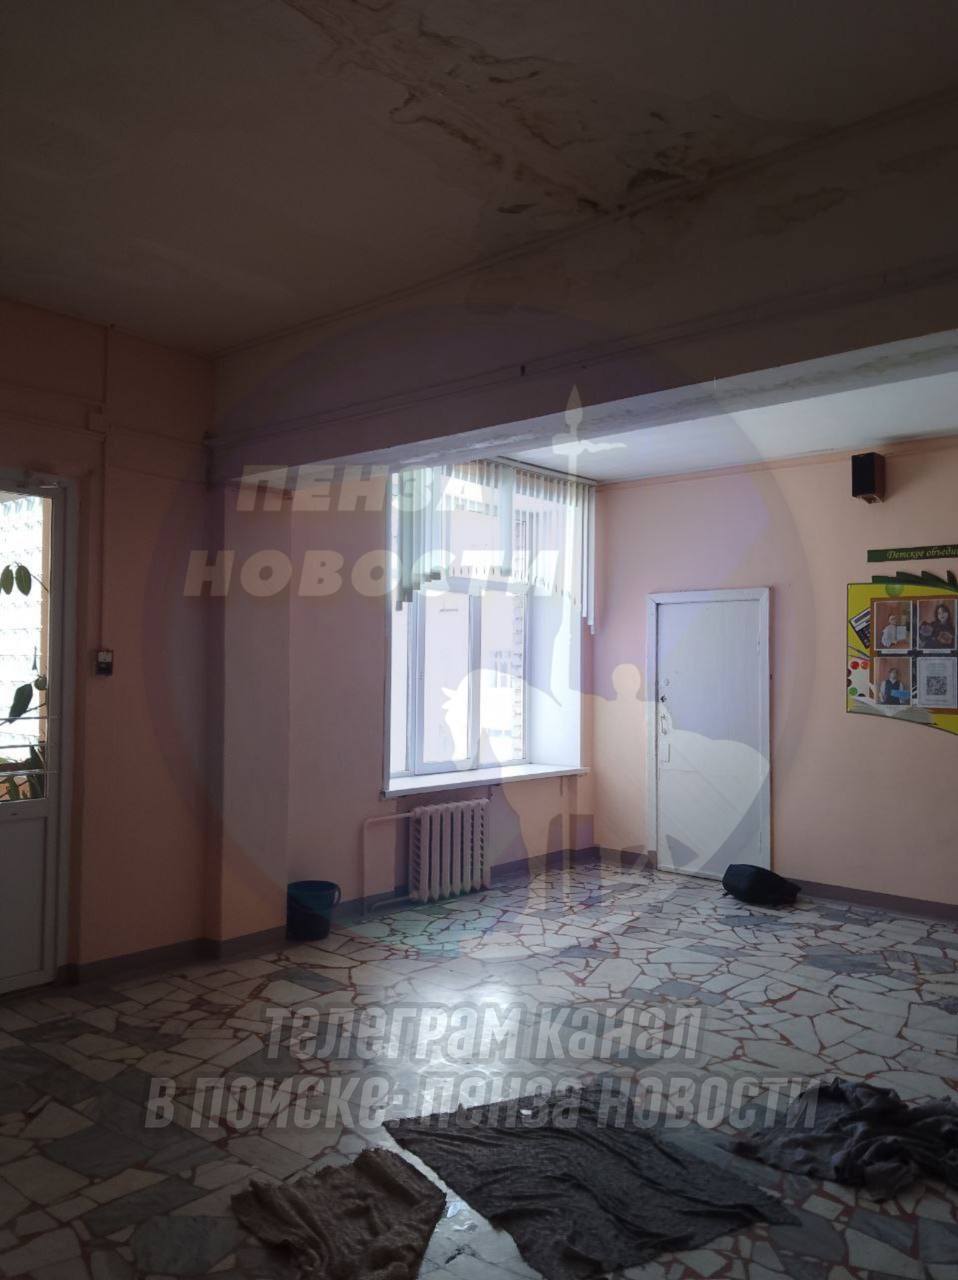 В Пензе учащиеся школы №28 пожаловались на потолок с которого течёт